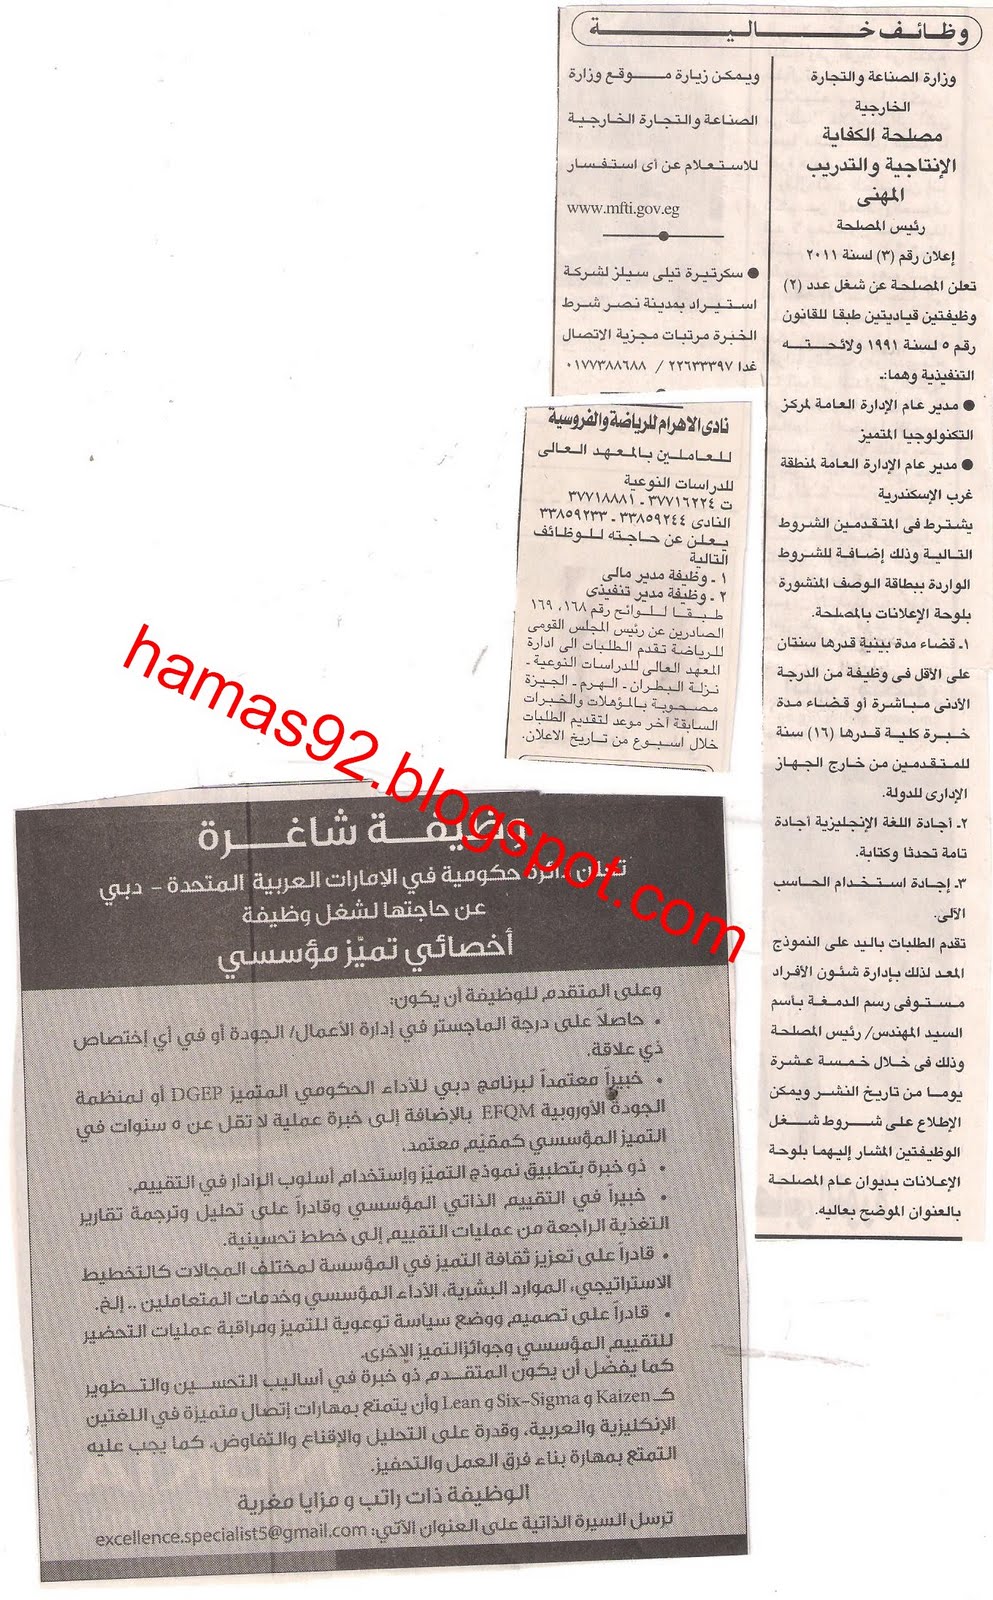 وظائف جريدة الاهرام الاحد 8 مايو 2011 - وظائف الصحف المصرية مايو 2011 Picture+003